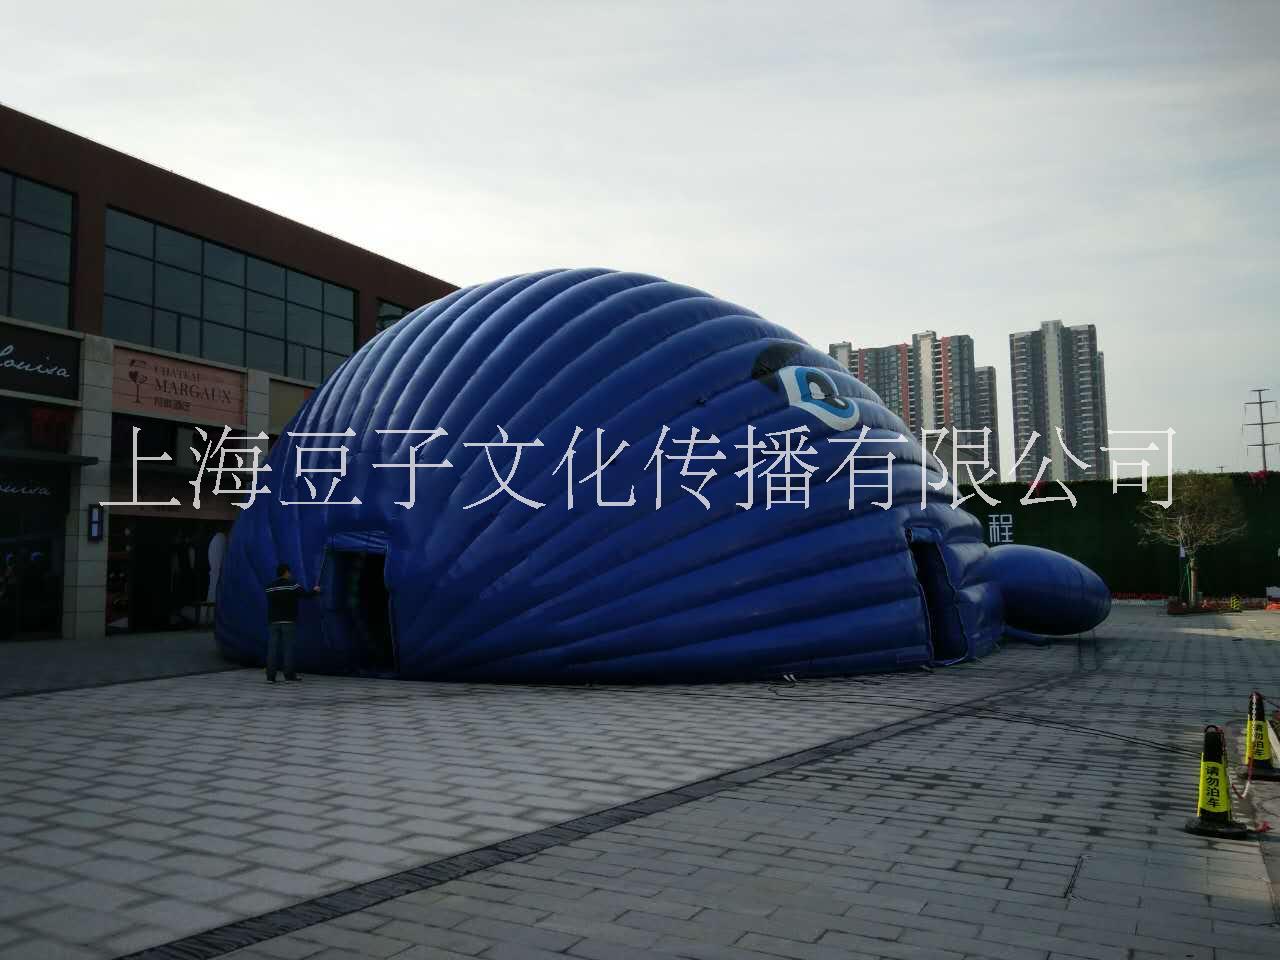 上海鲸鱼岛乐园厂家上海鲸鱼岛乐园展览租赁 鲸鱼岛气模 海洋球 鲸鱼岛